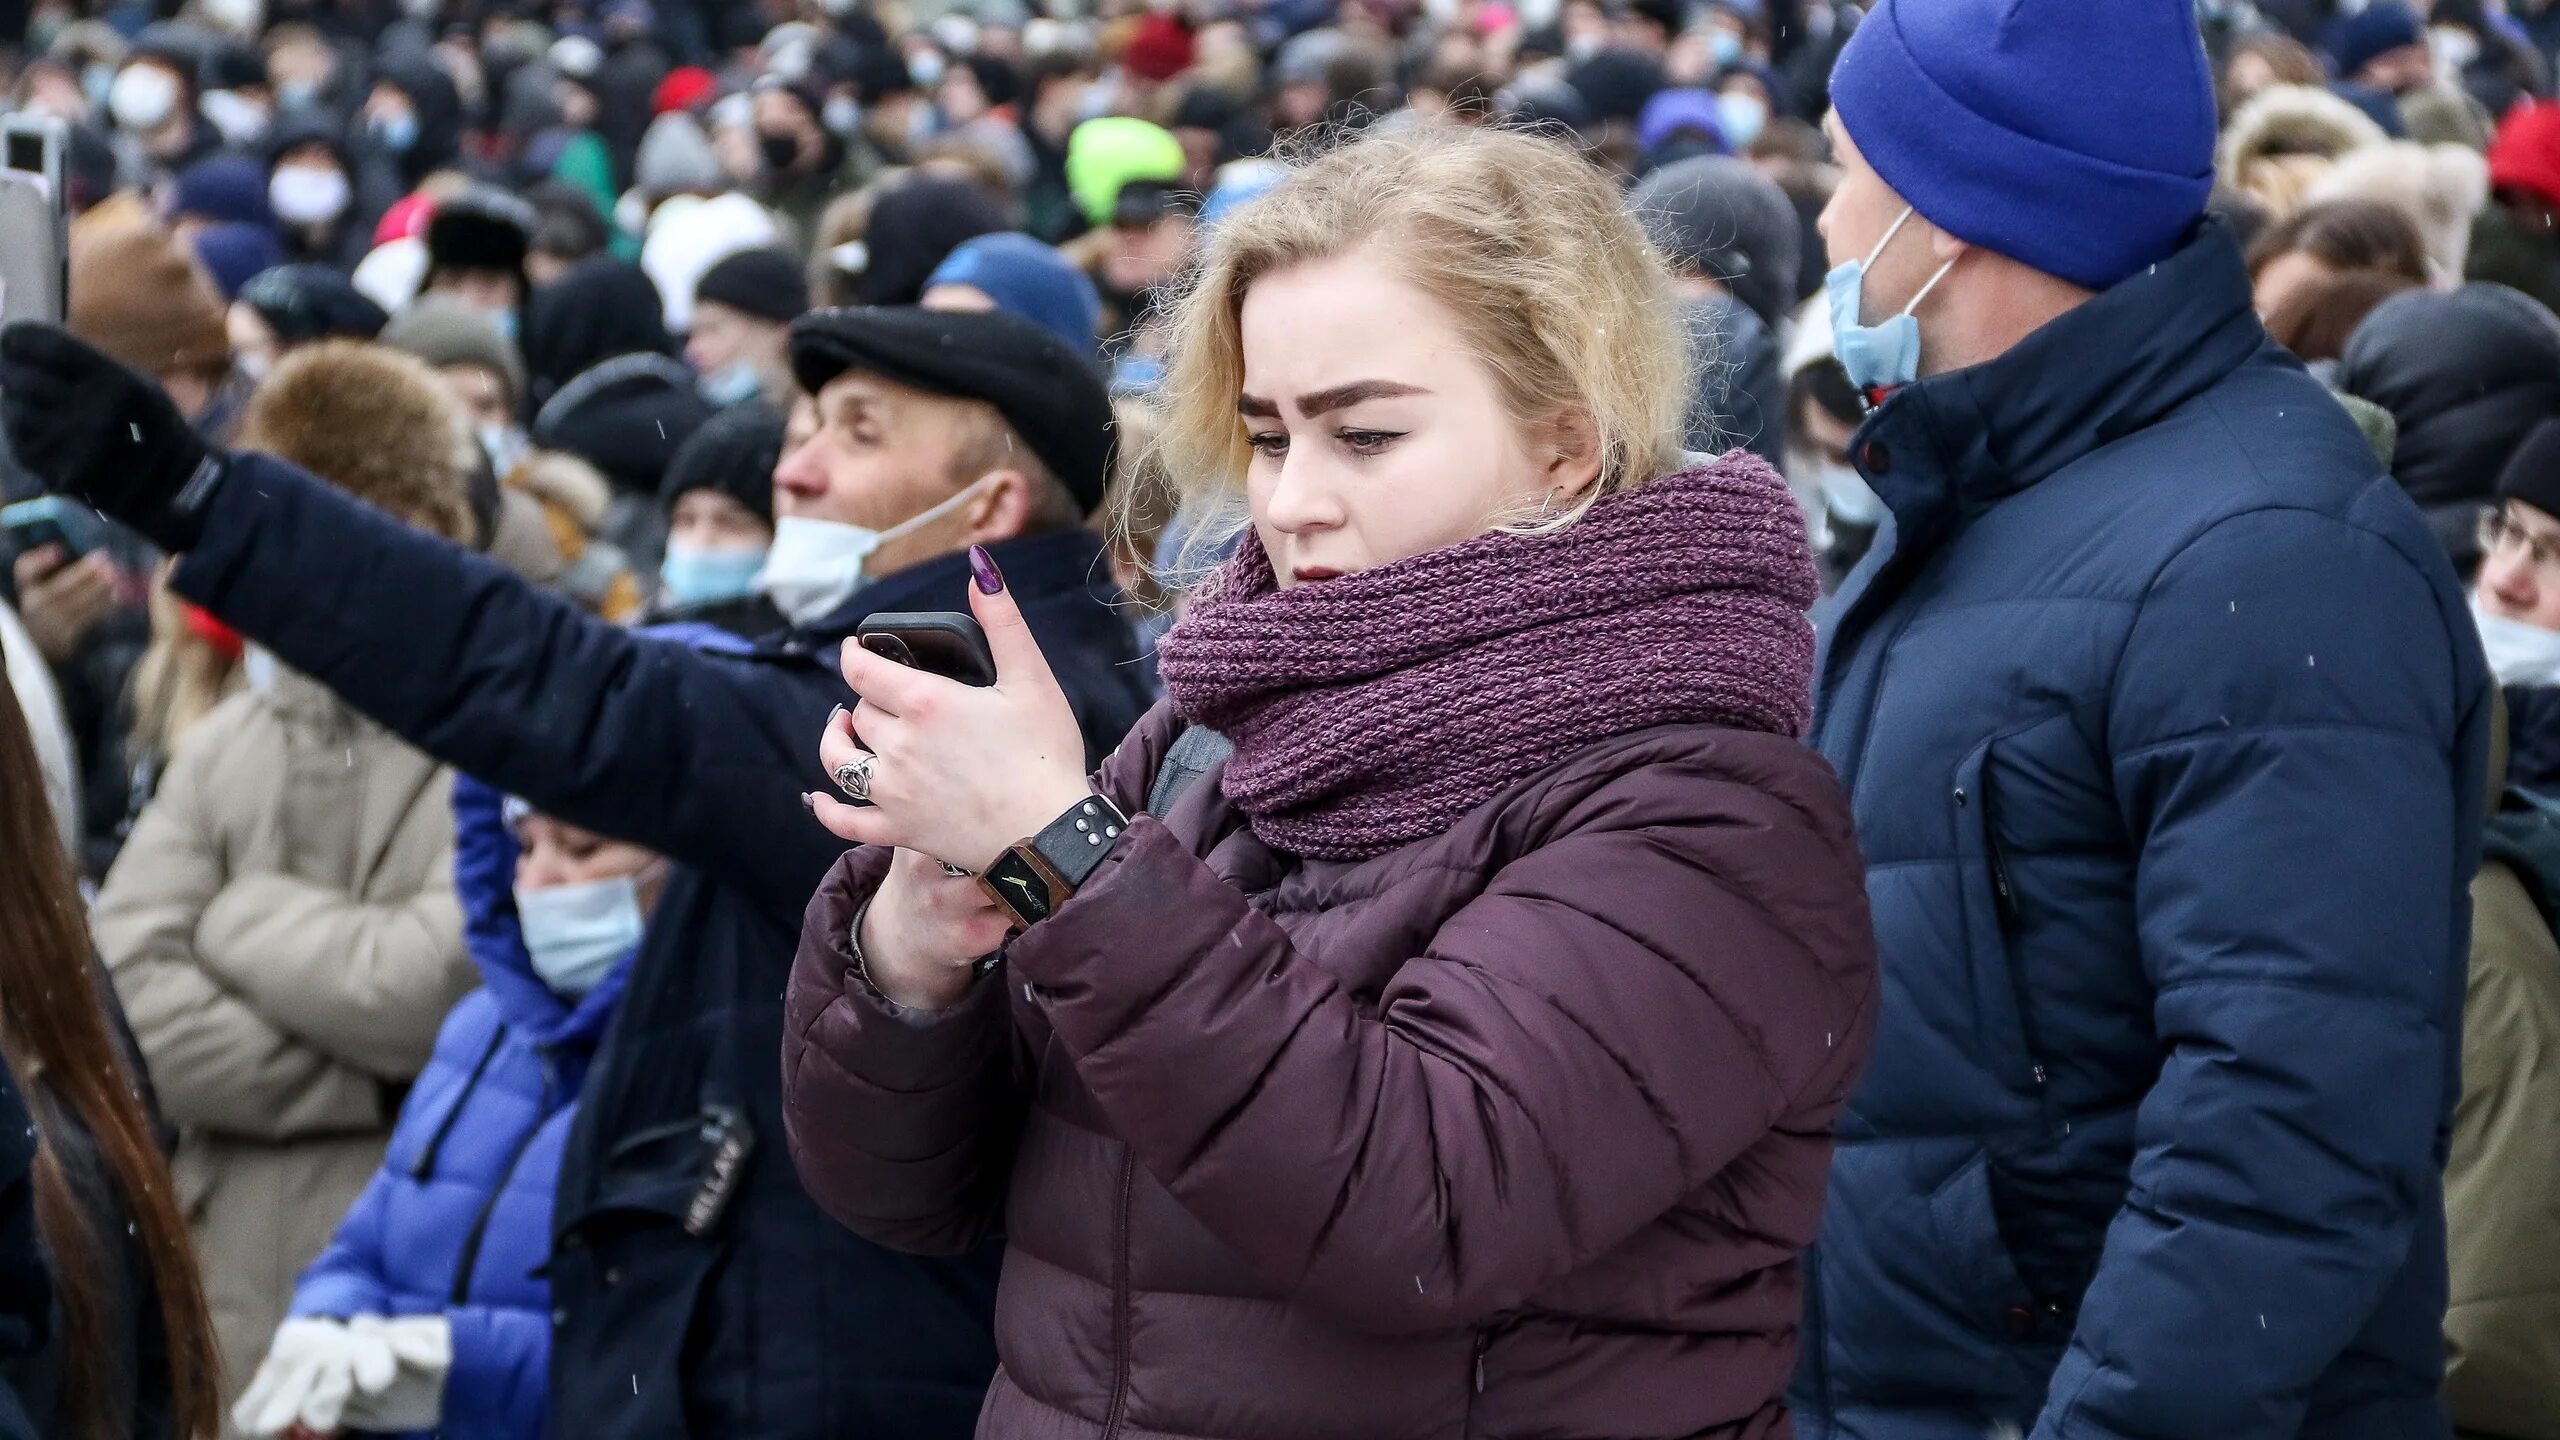 Митинг фото. Протест подростка. Дочь журналистки в Нижнем Новгороде. Митинги прошедшие в городах